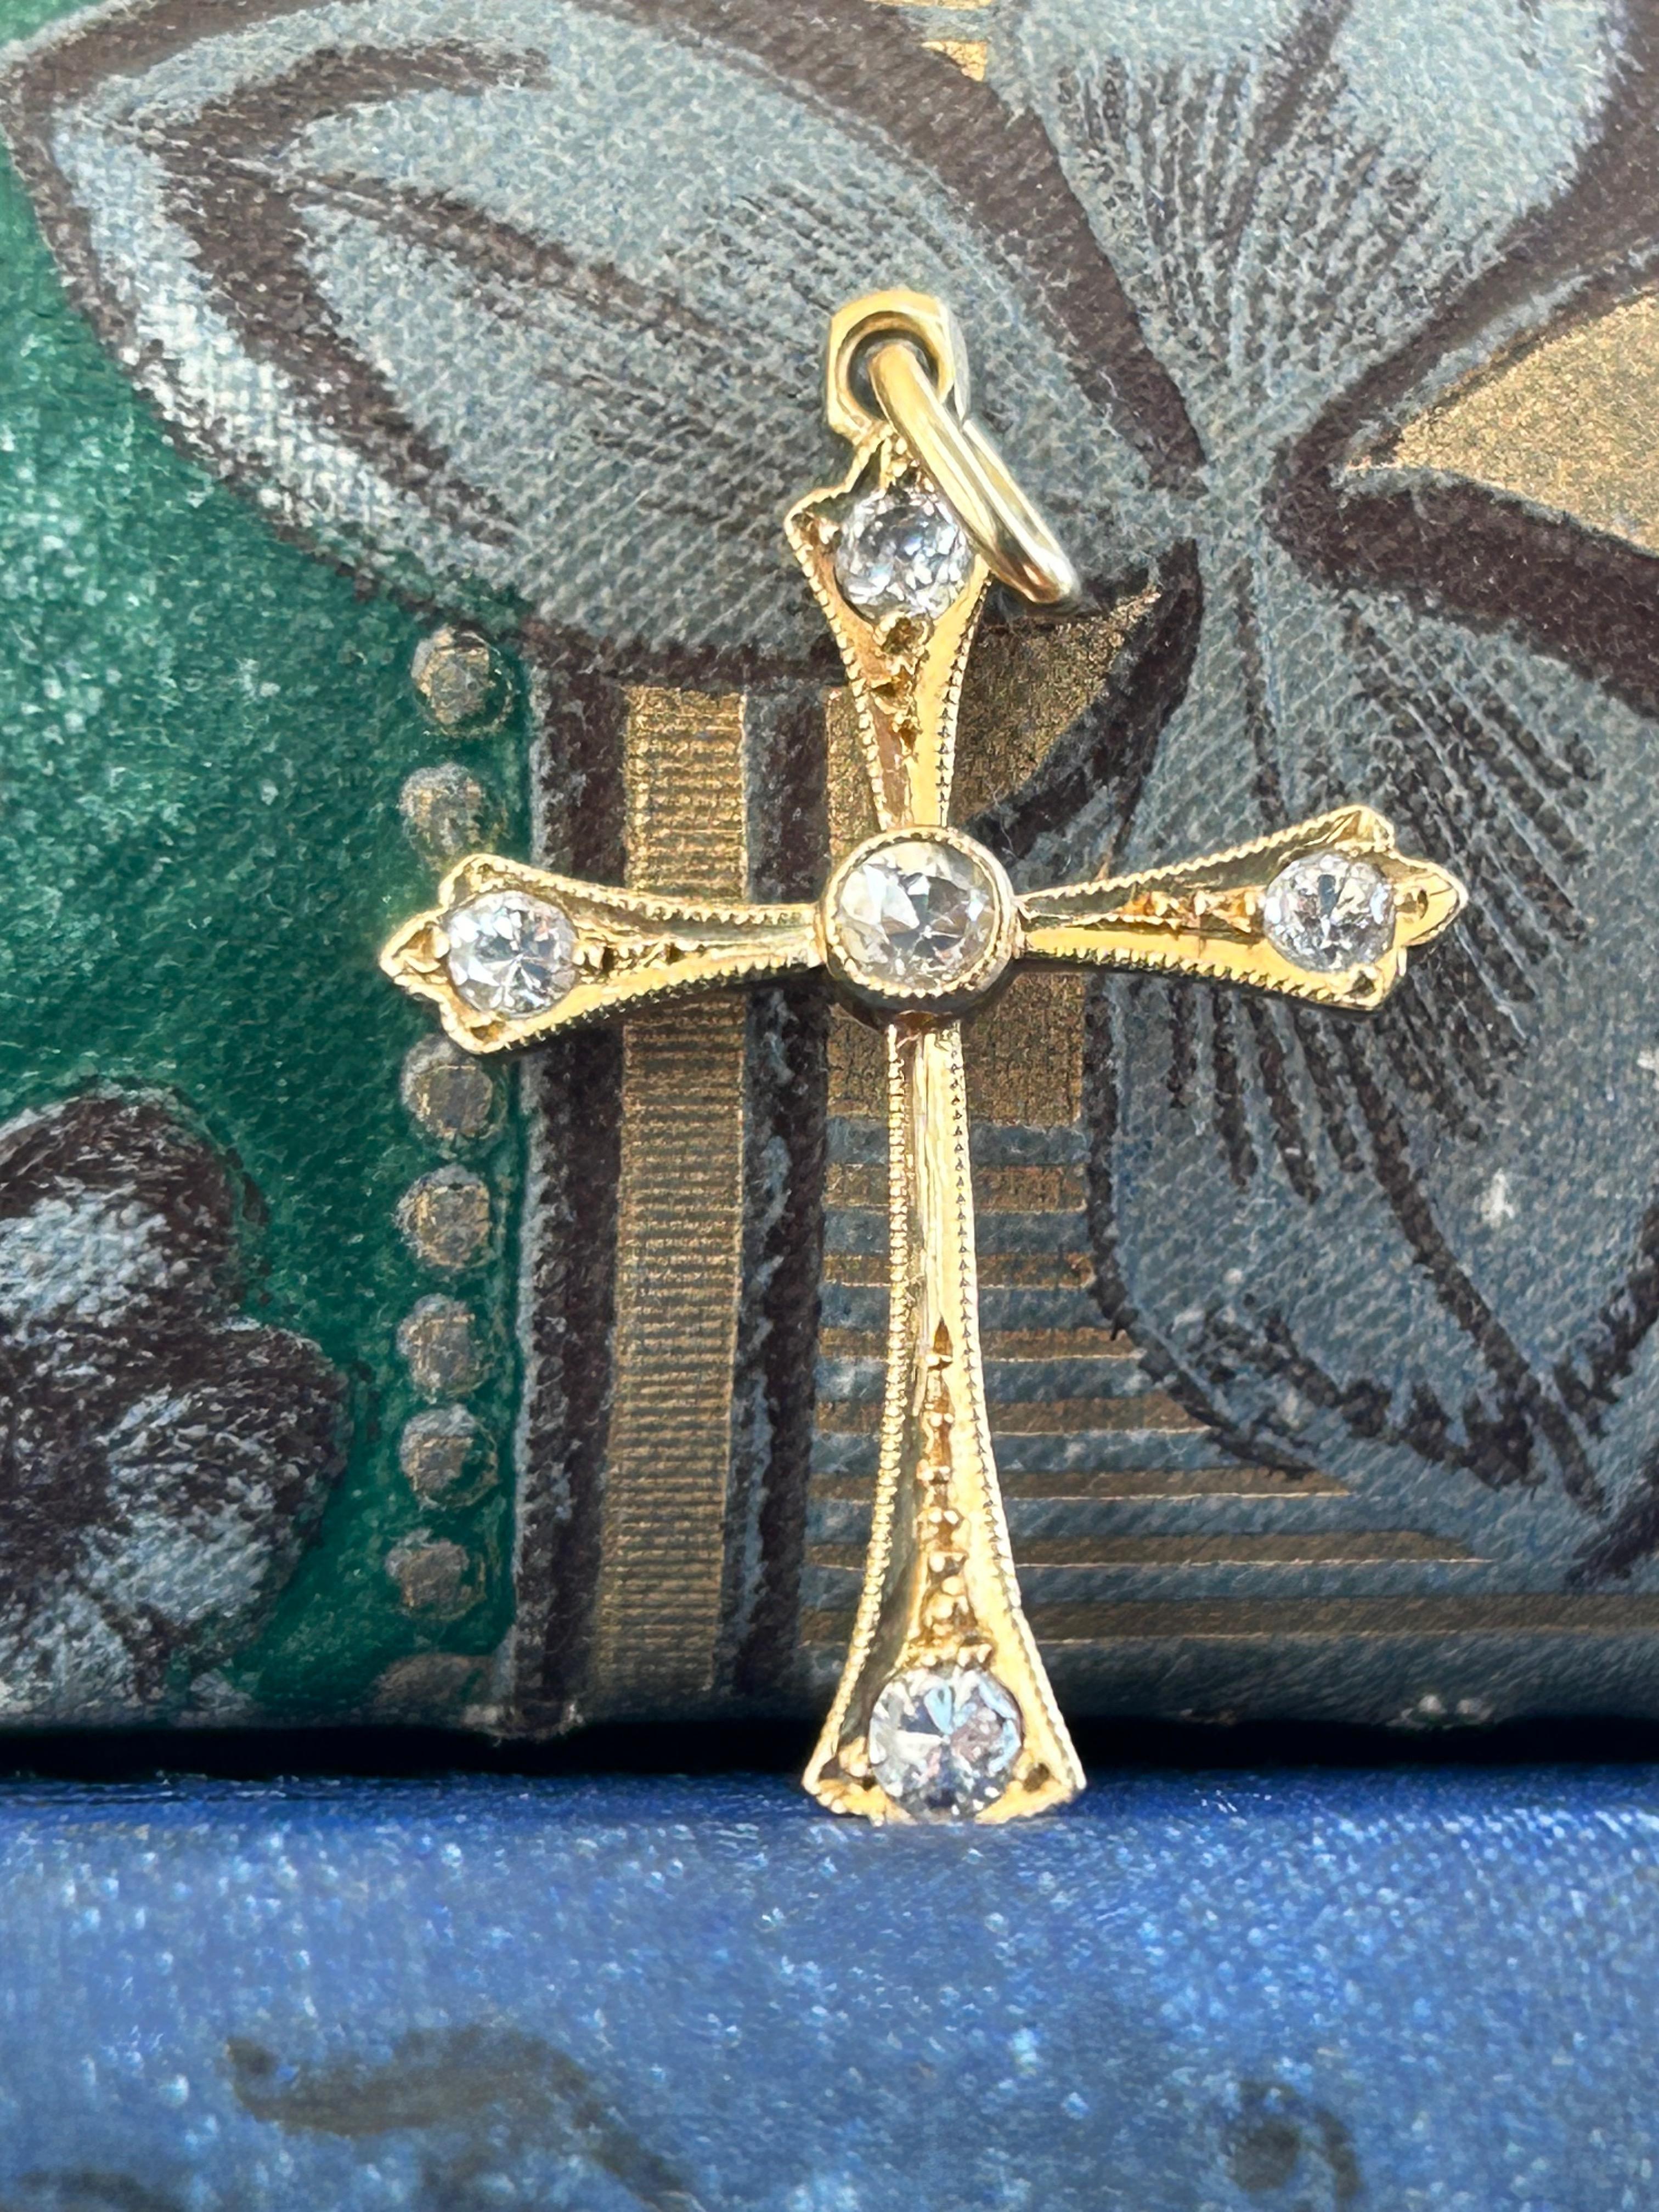 Un joli pendentif en forme de croix datant de la période édouardienne (années 1910).  Cette magnifique pièce est réalisée en or jaune 18 carats et prend la forme d'une croix ornée. Le corps de la croix est orné de cinq diamants de taille européenne